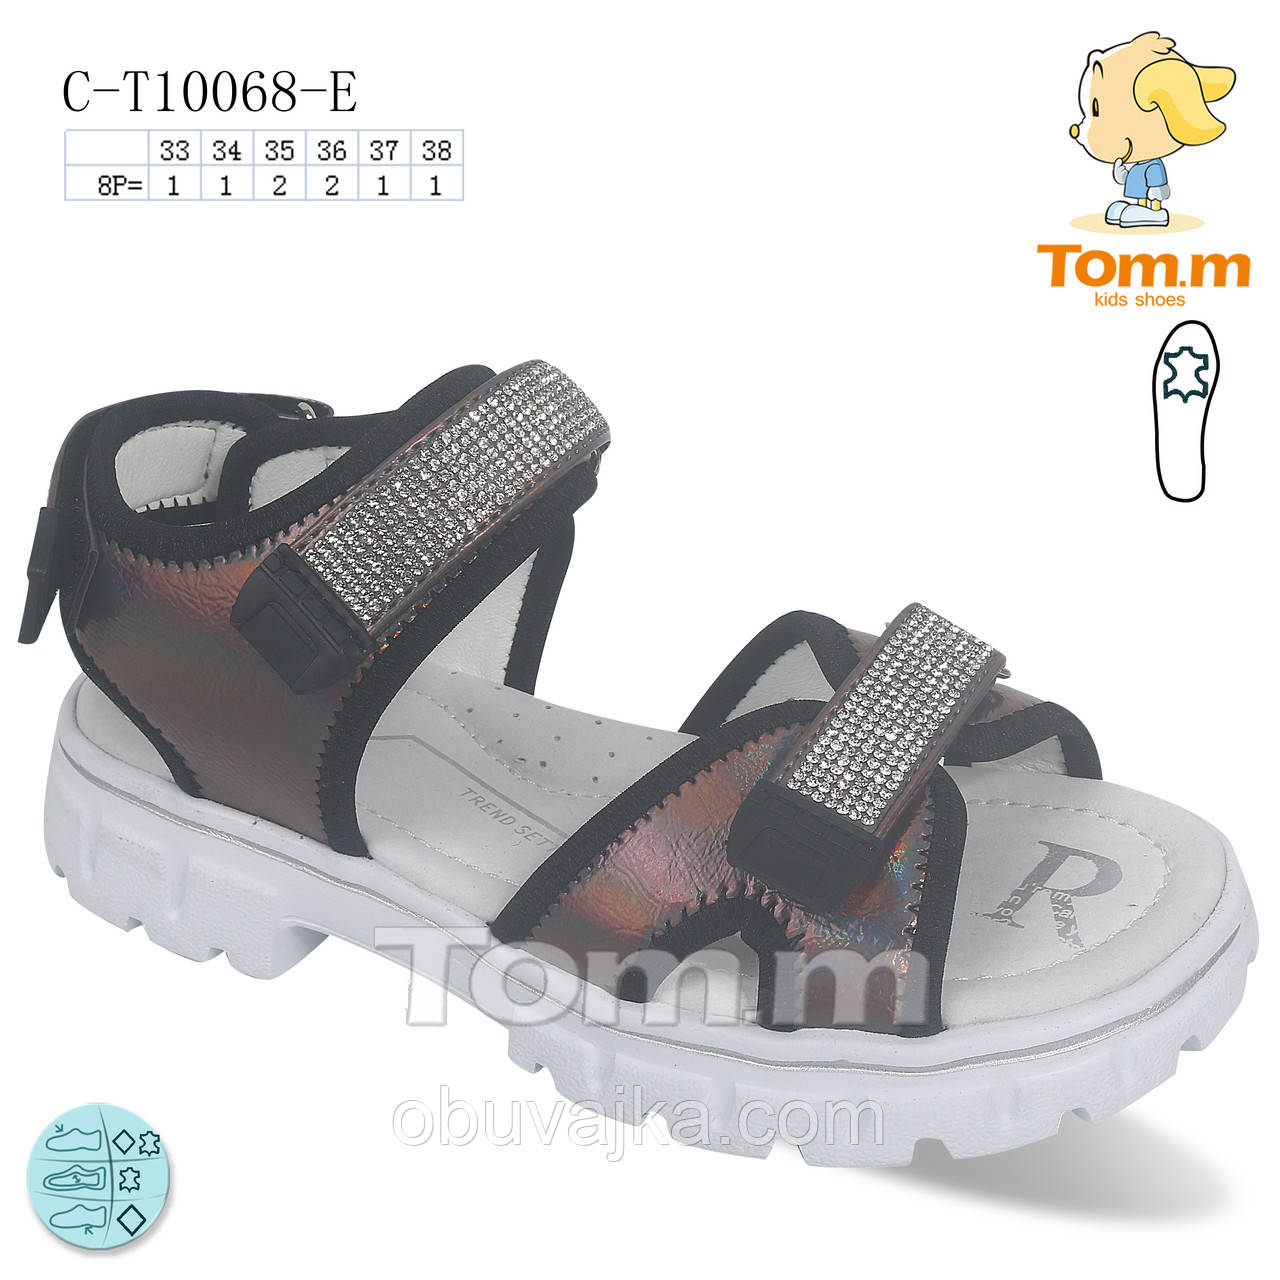 Літнє взуття оптом Босоніжки для дівчинки від виробника Tom m (рр 33-38)